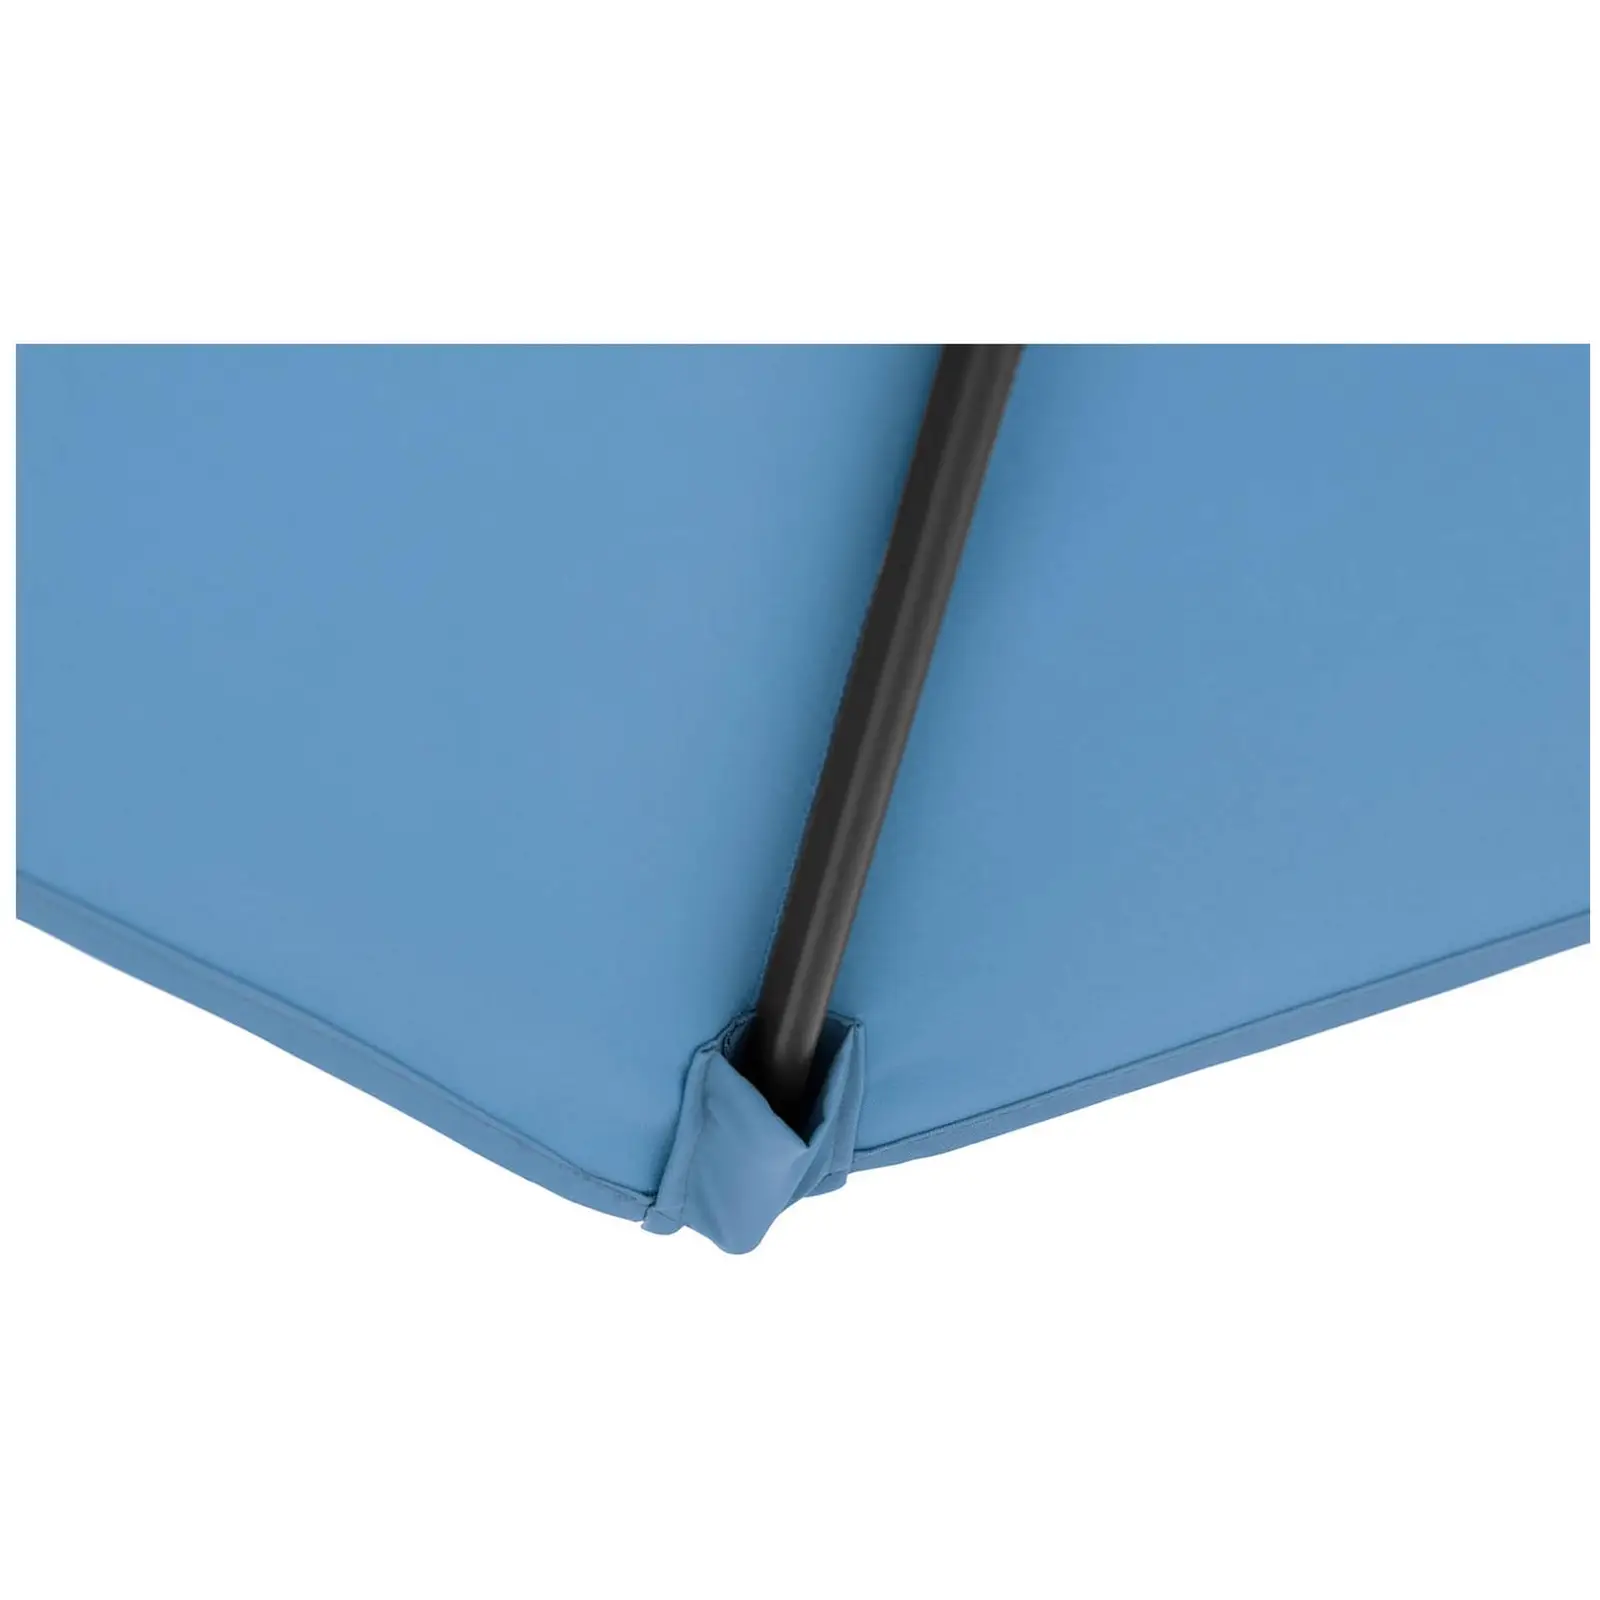 Occasion Parasol de terrasse - Blue - Rectangulaire - 200 x 300 cm